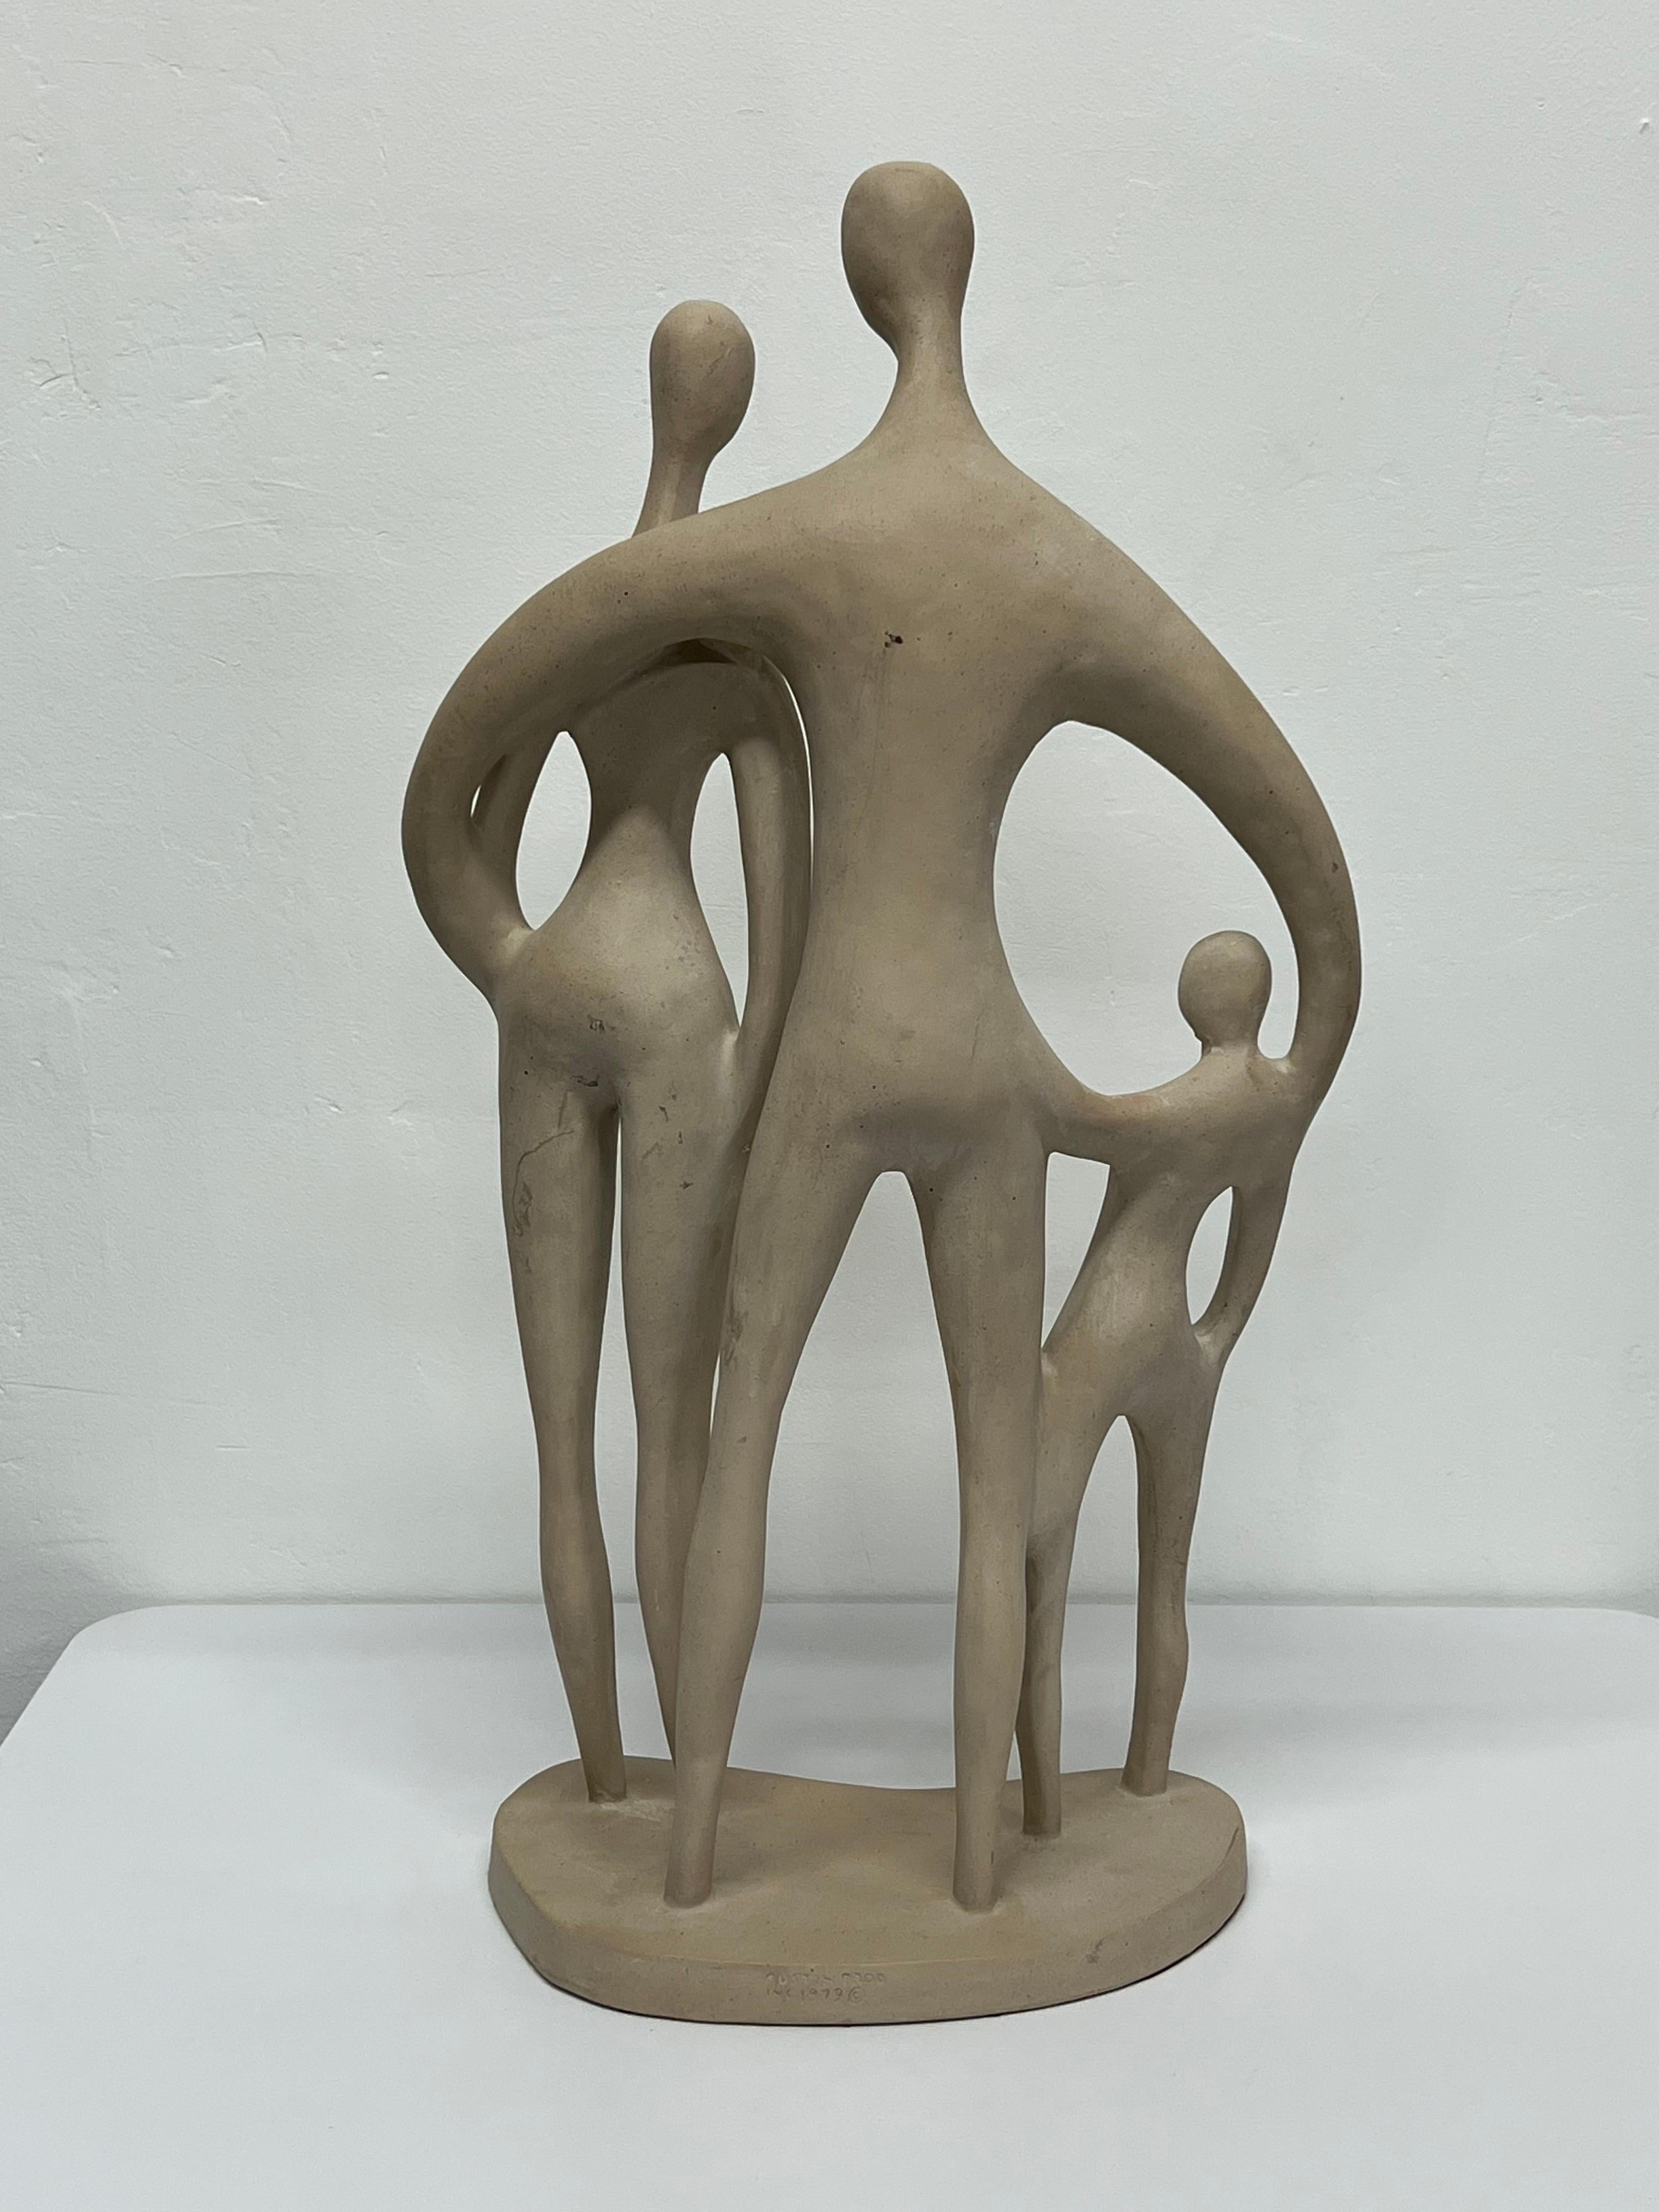 austin productions sculptures 1979